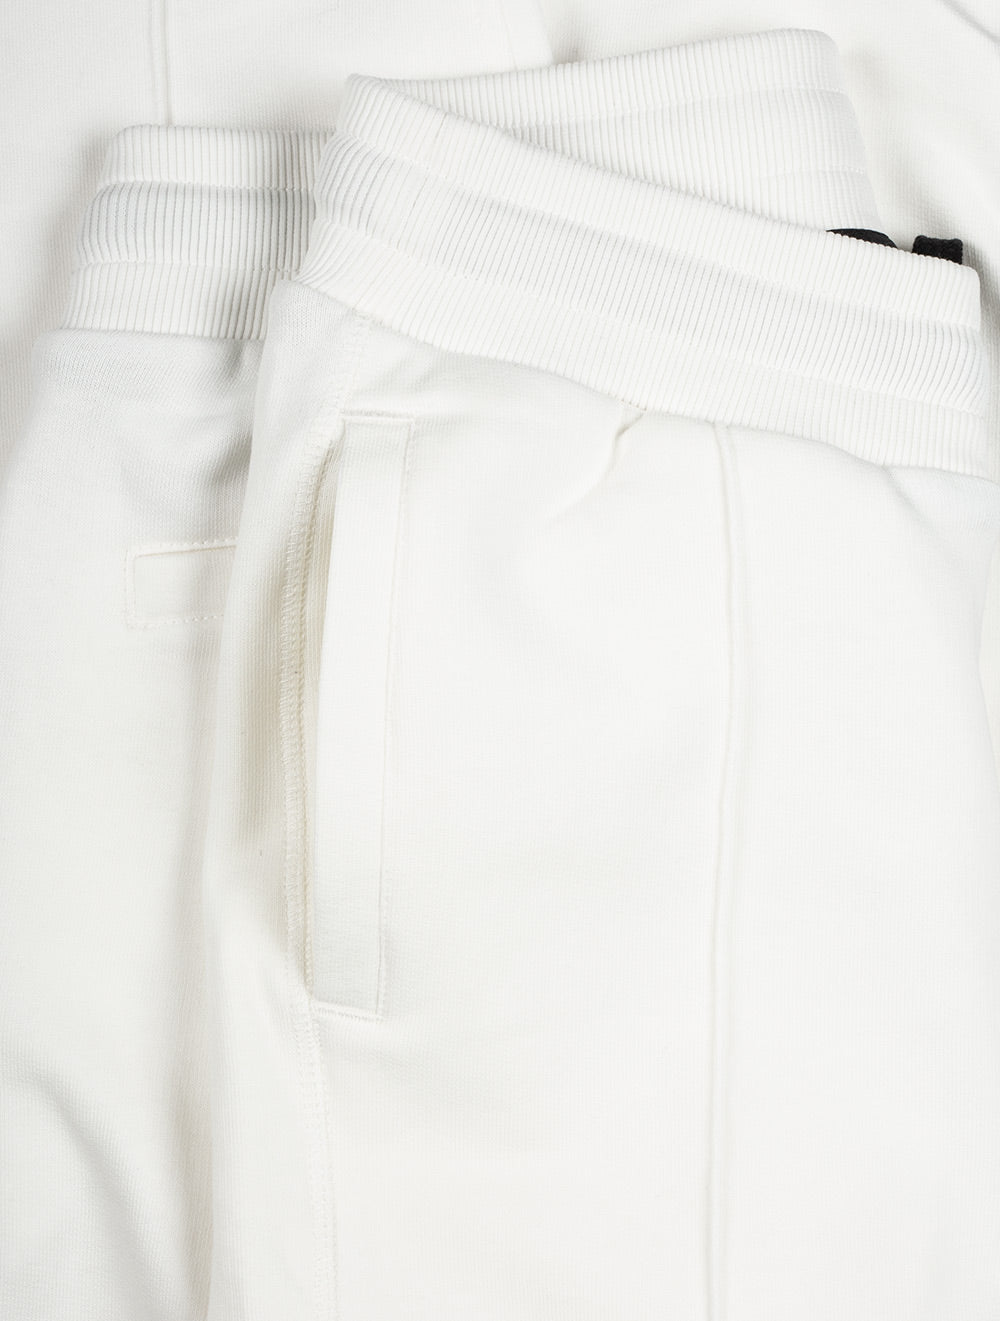 WAHTS LOGAN Cuffed Sweatpants White